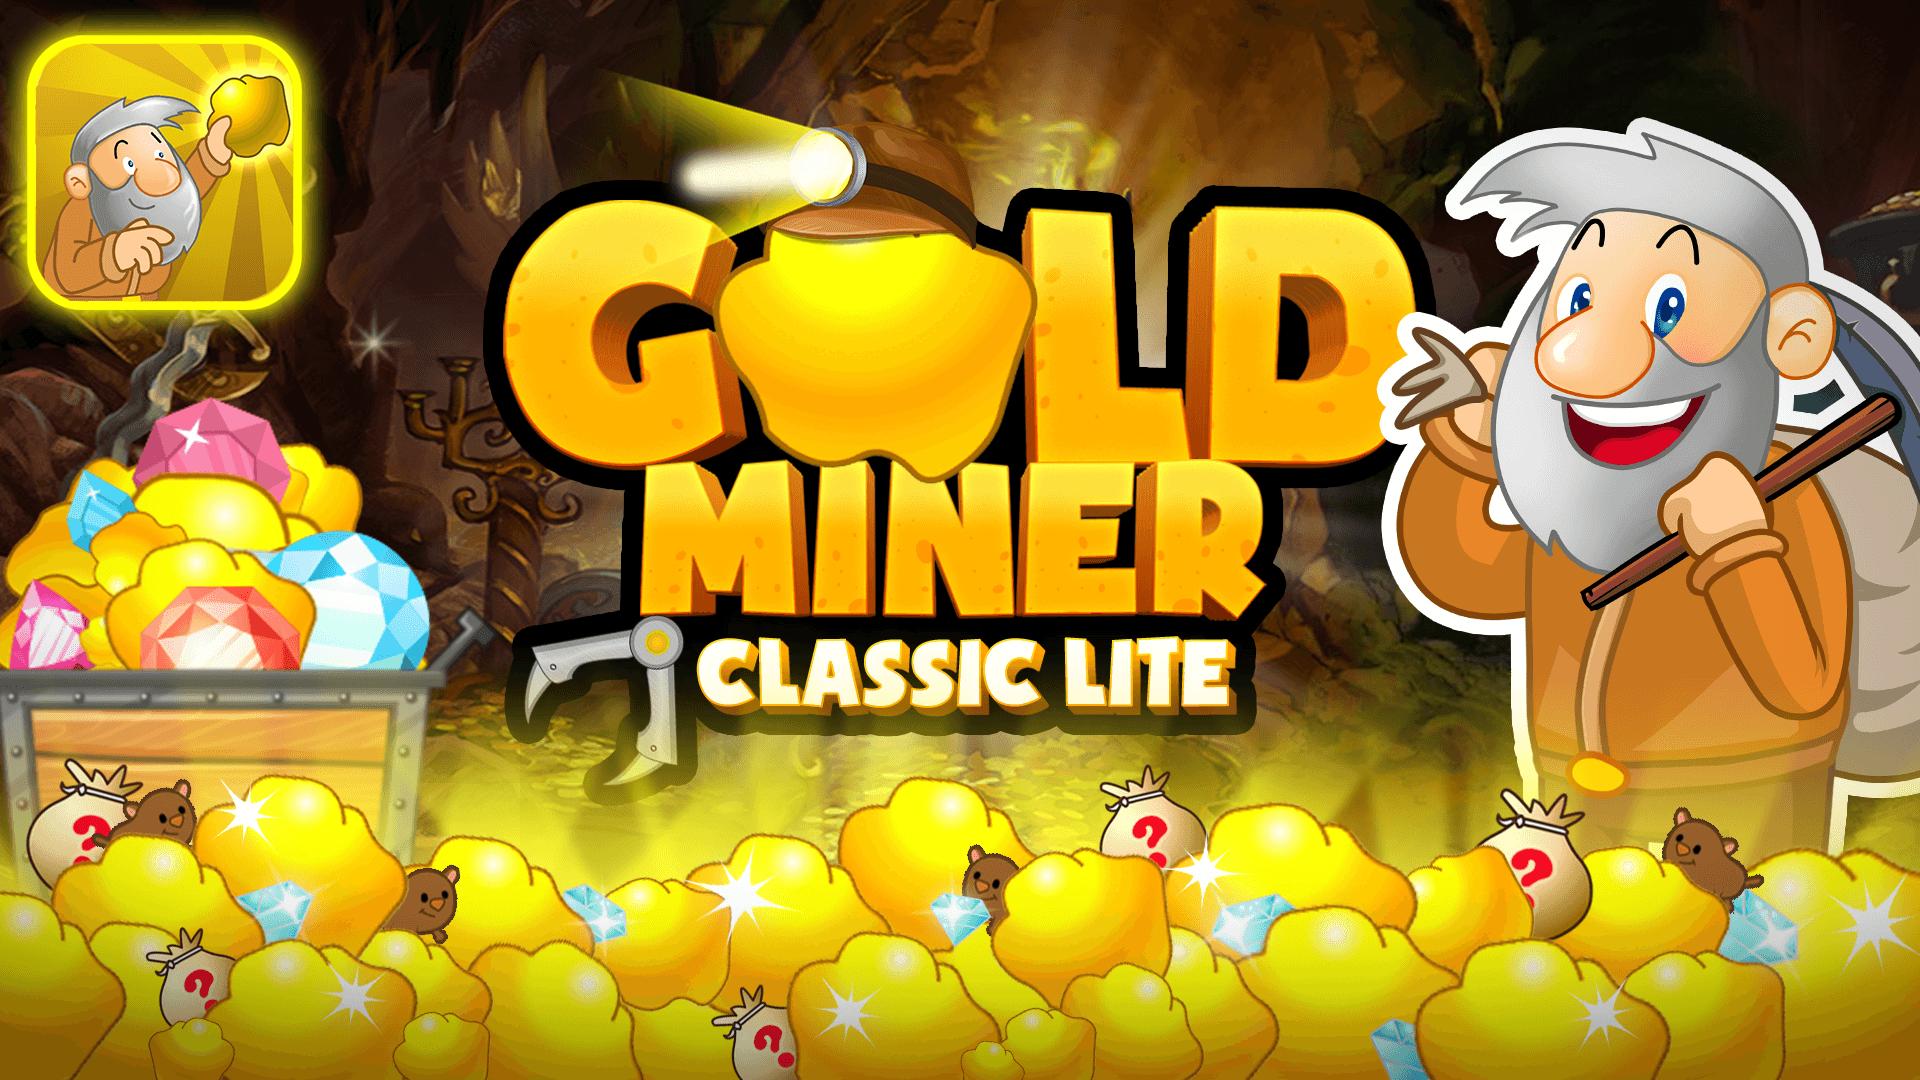 Голд майнер. Игра Gold Miner. Gold Miner Classic. Игровой автомат Gold Miner. Игра Gold Miner играть.